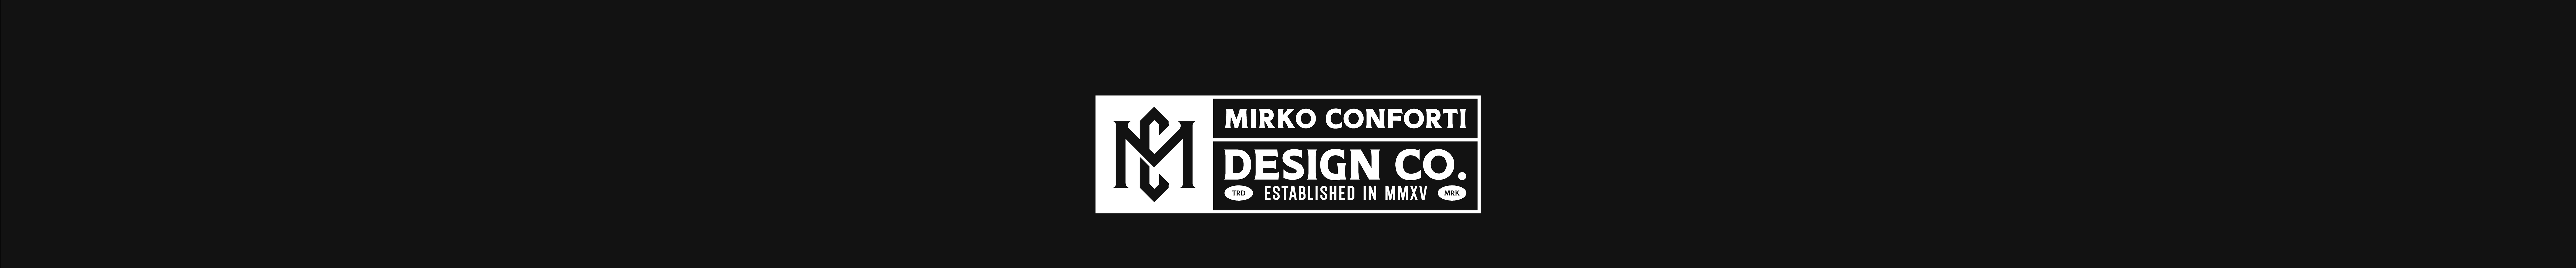 Mirko Conforti's profile banner